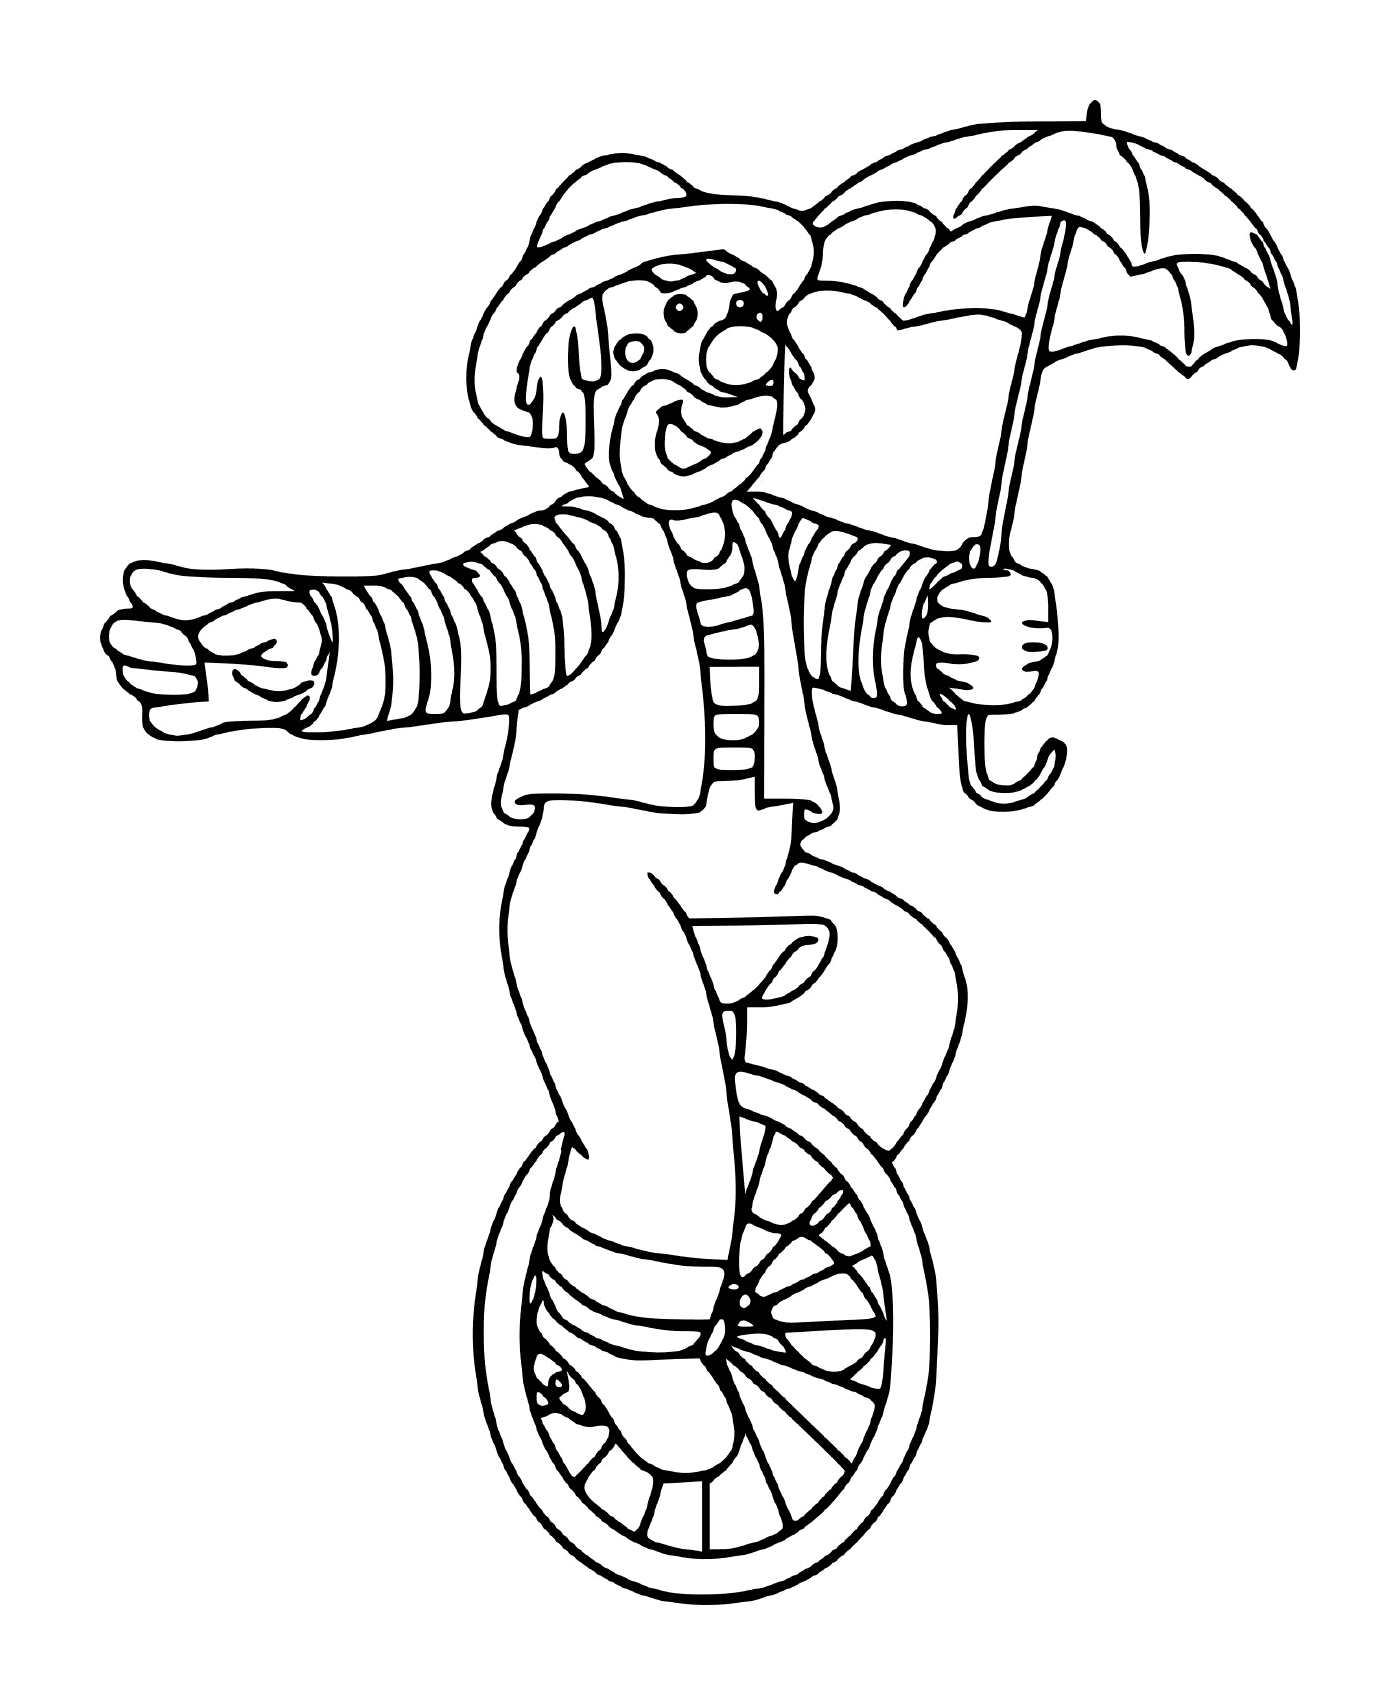  马戏团小丑用雨伞在车轮上平衡 